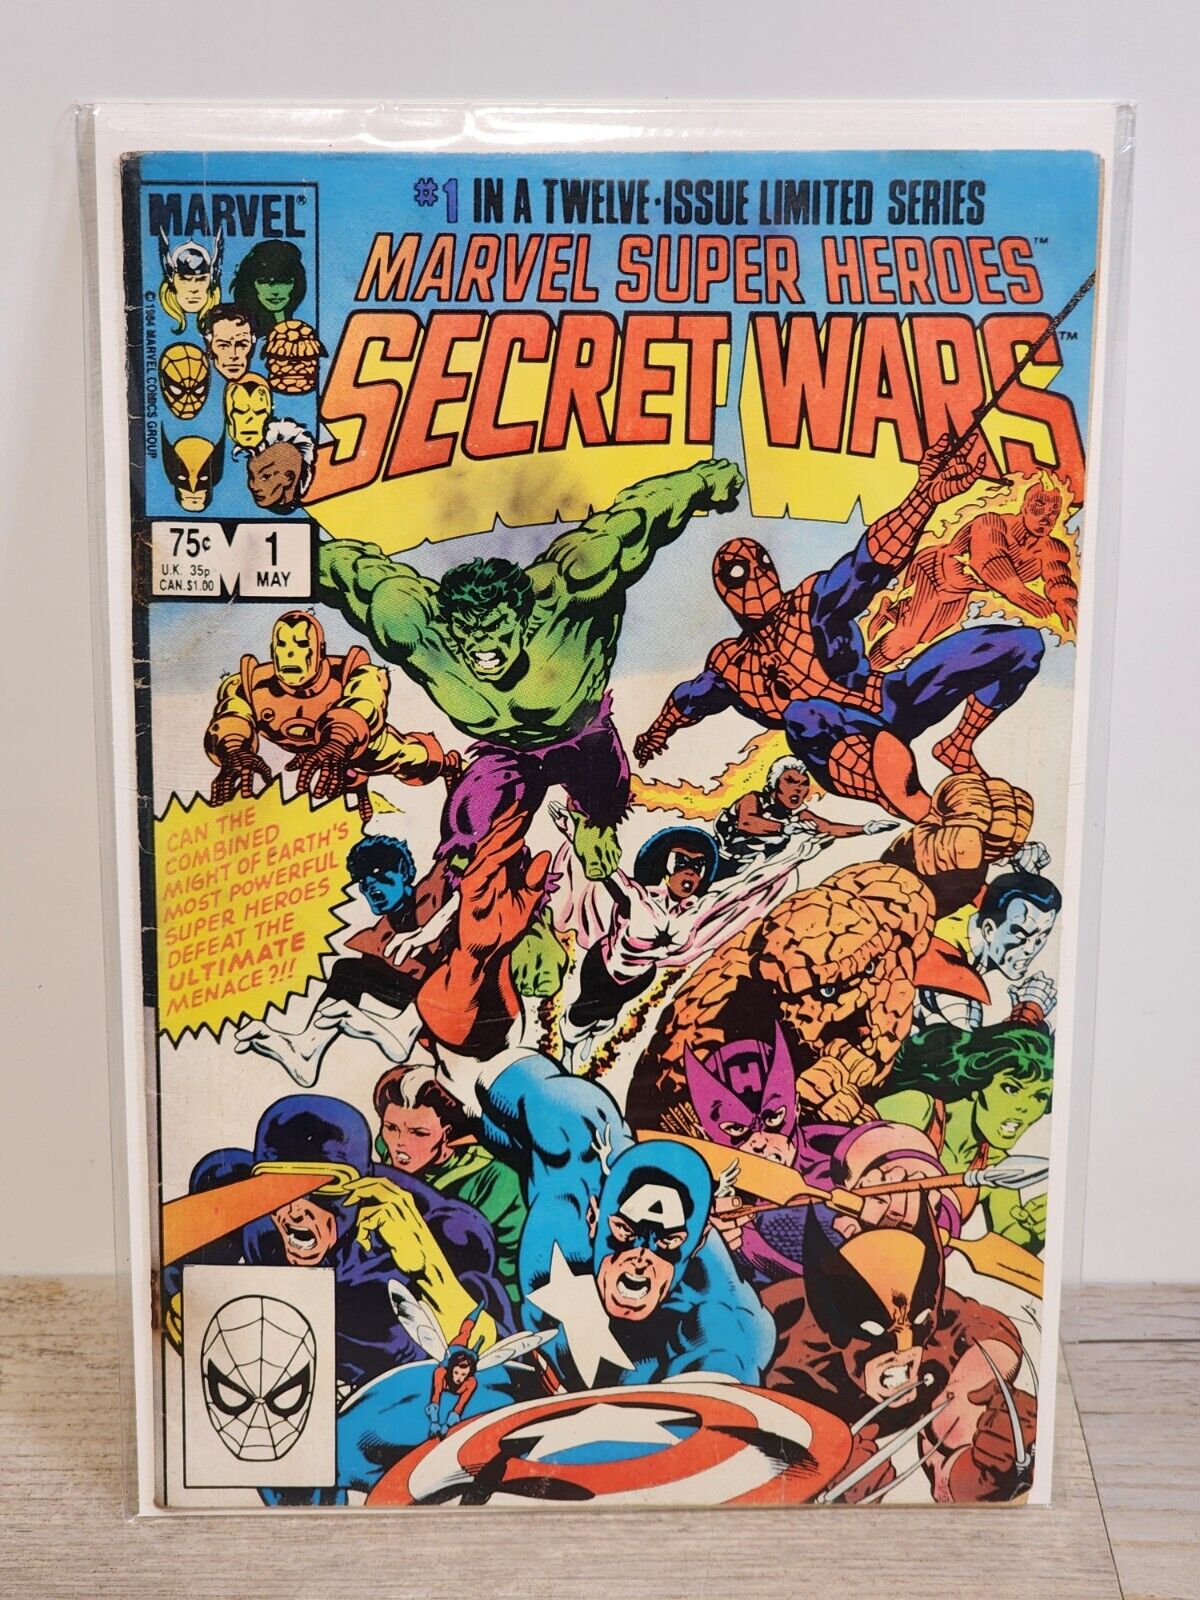 SECRET WARS #1 (Marvel, 1984) Marvel Super Heroes